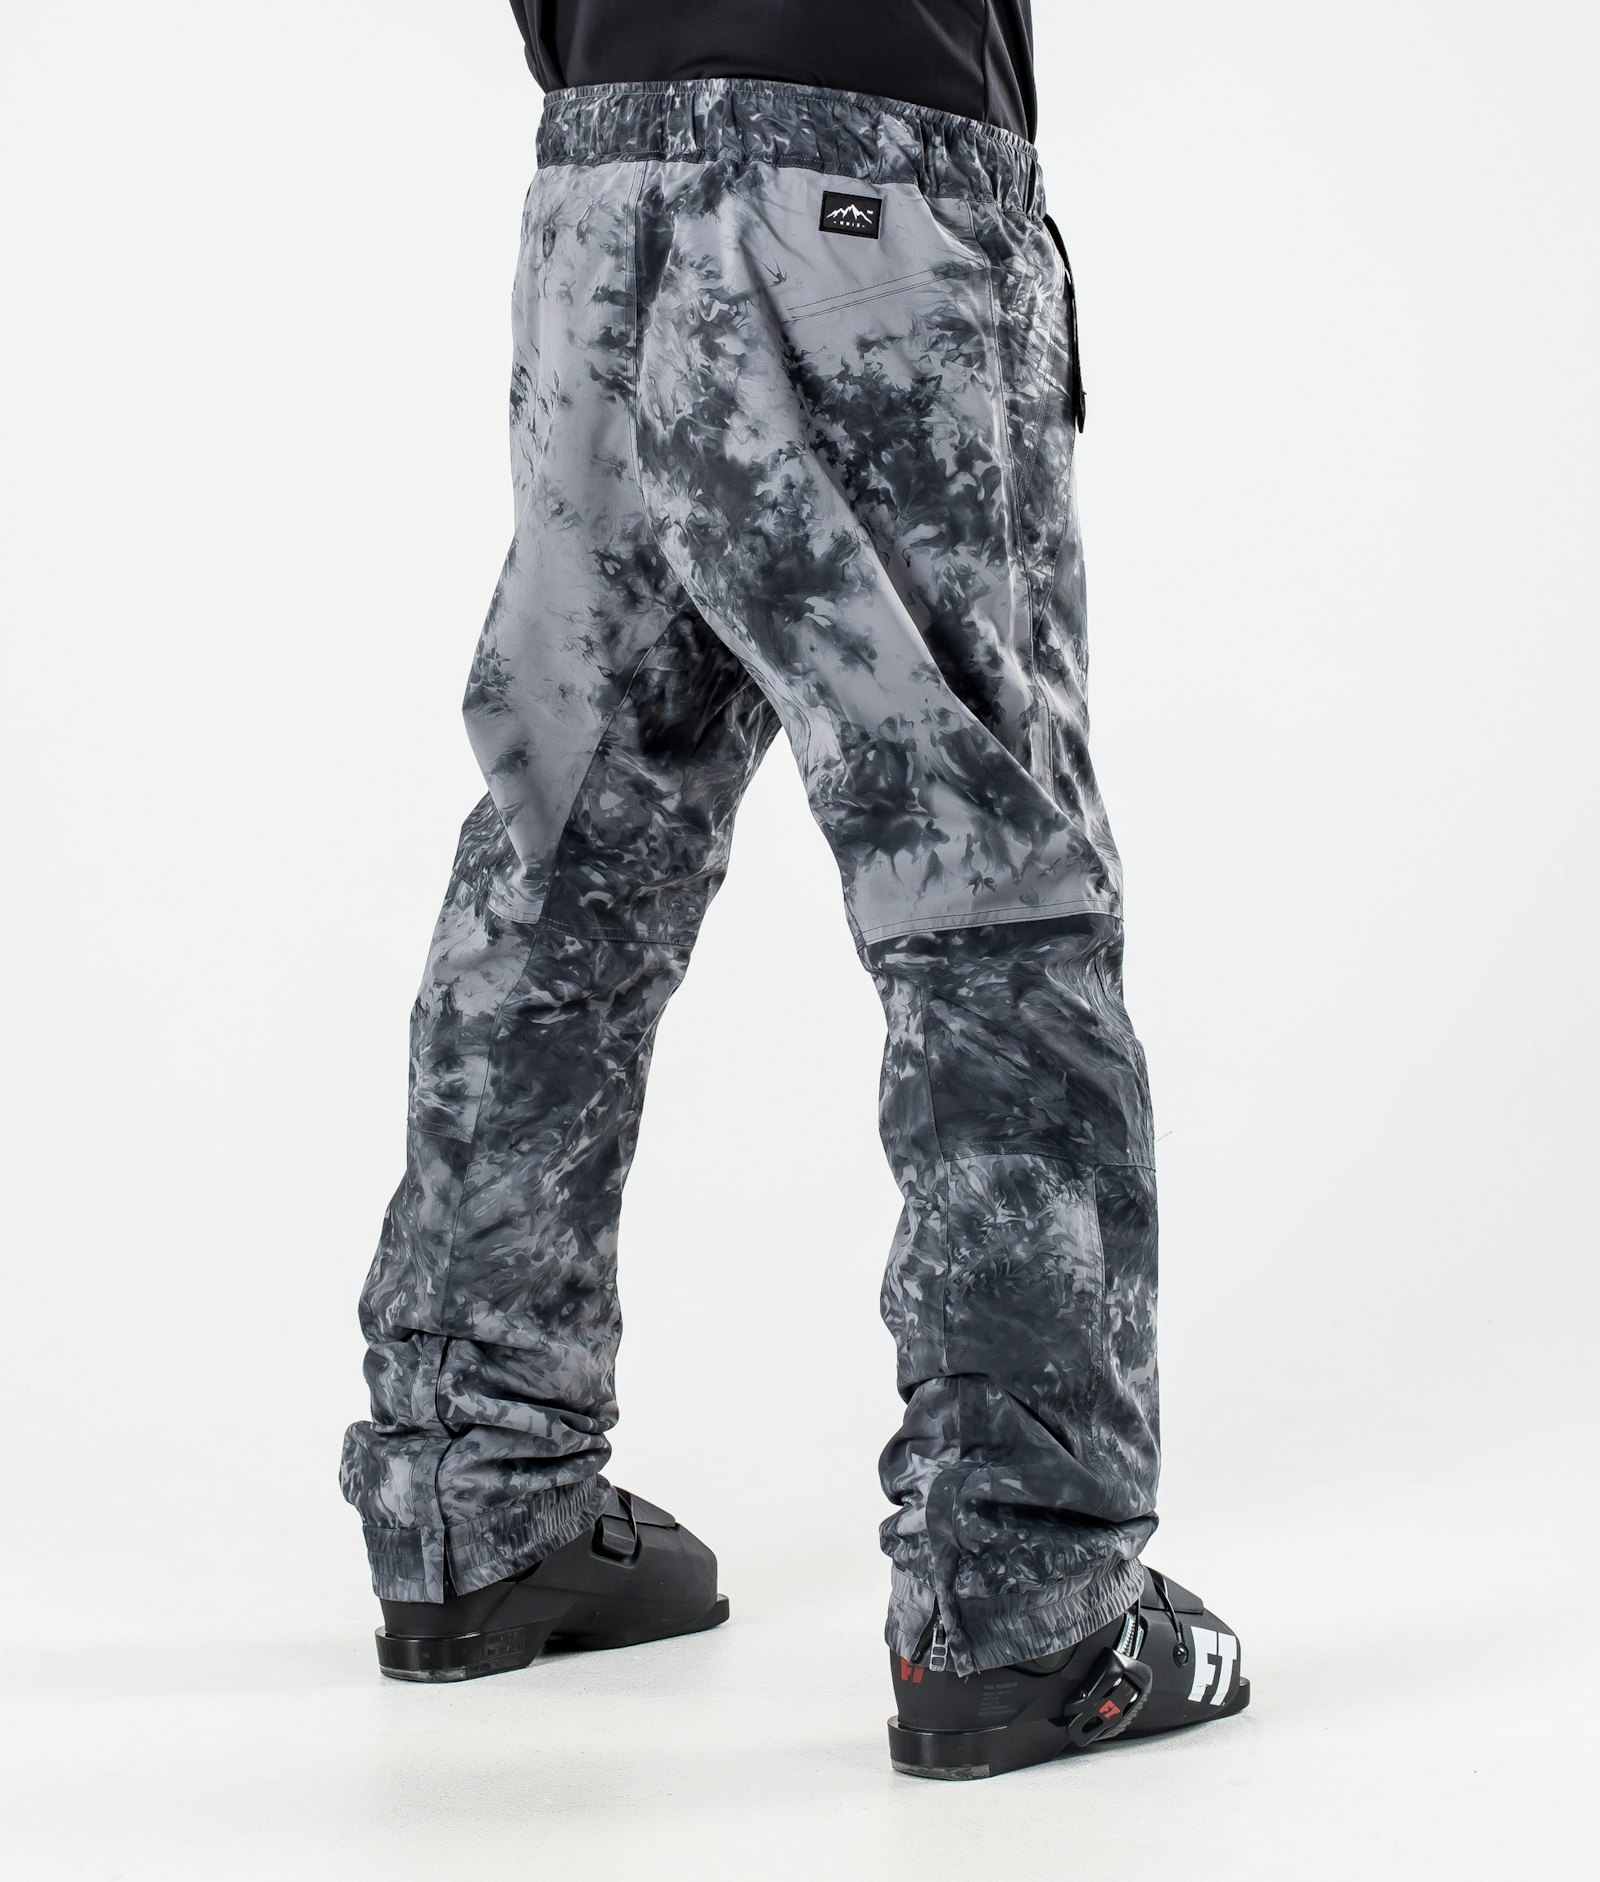 Blizzard 2020 Ski Pants Men Limited Edition Tiedye